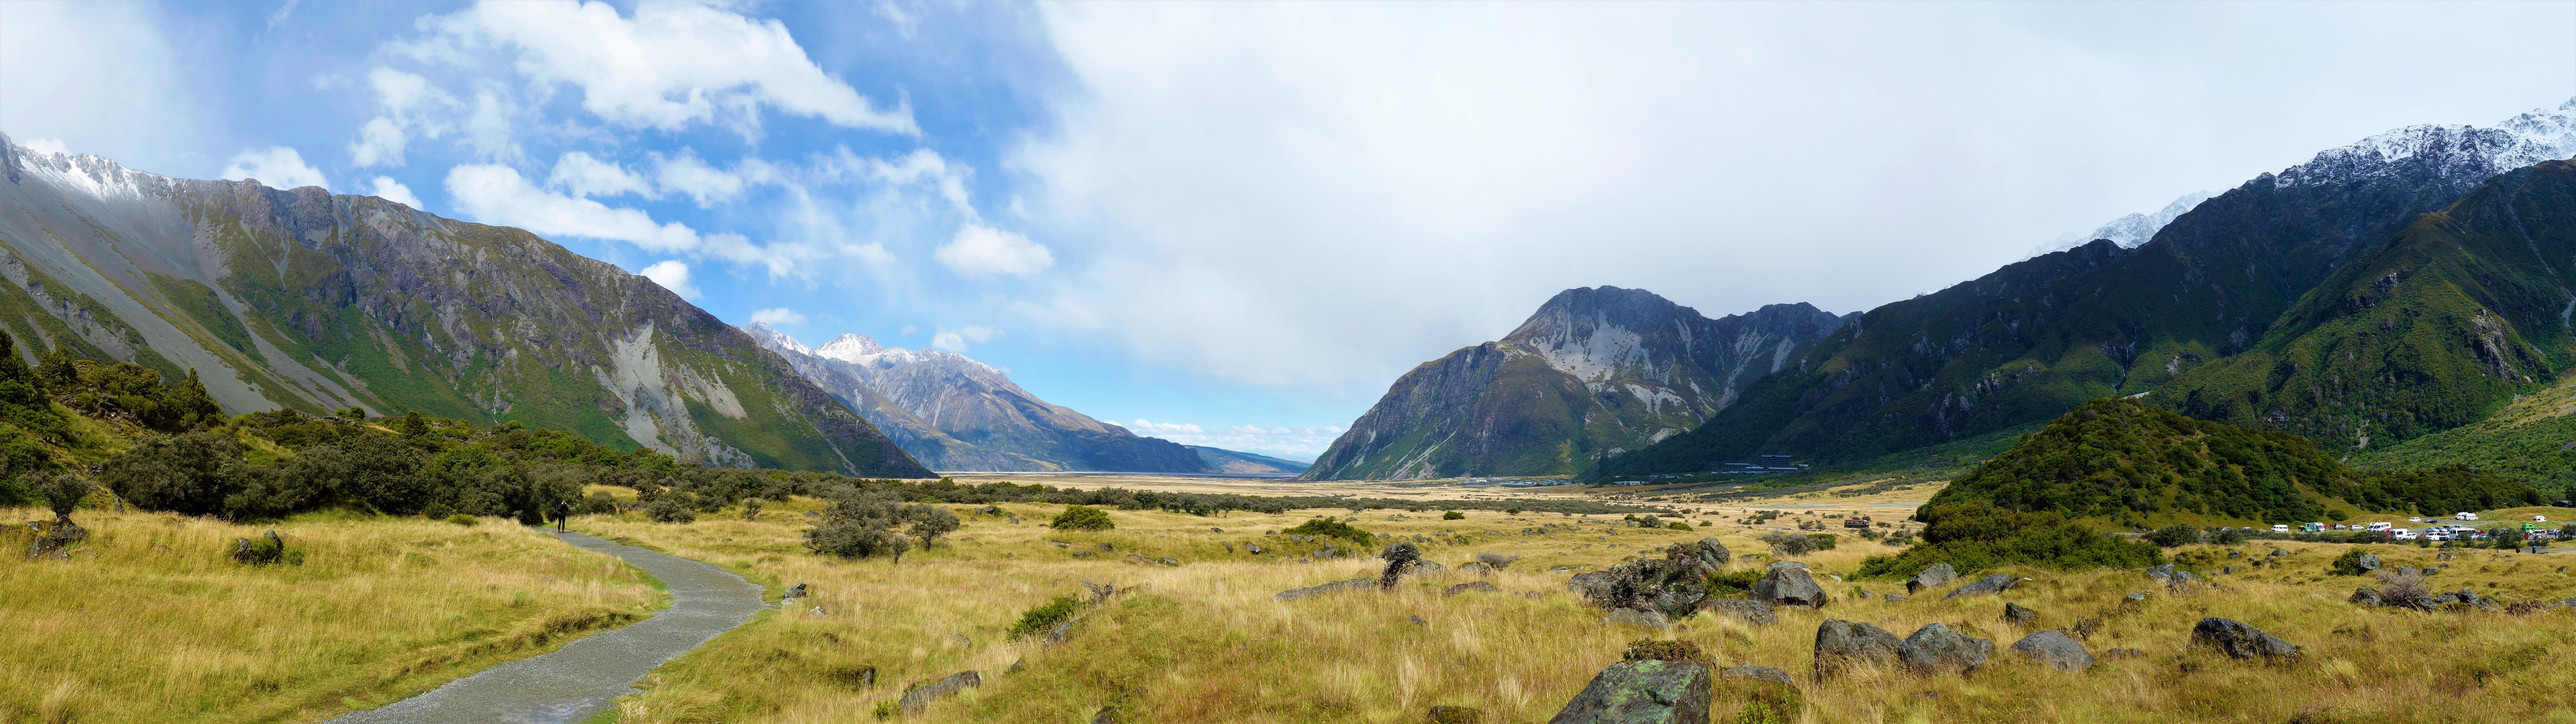 Sidelined_Landscape, Mt Cook, New Zealand скачать